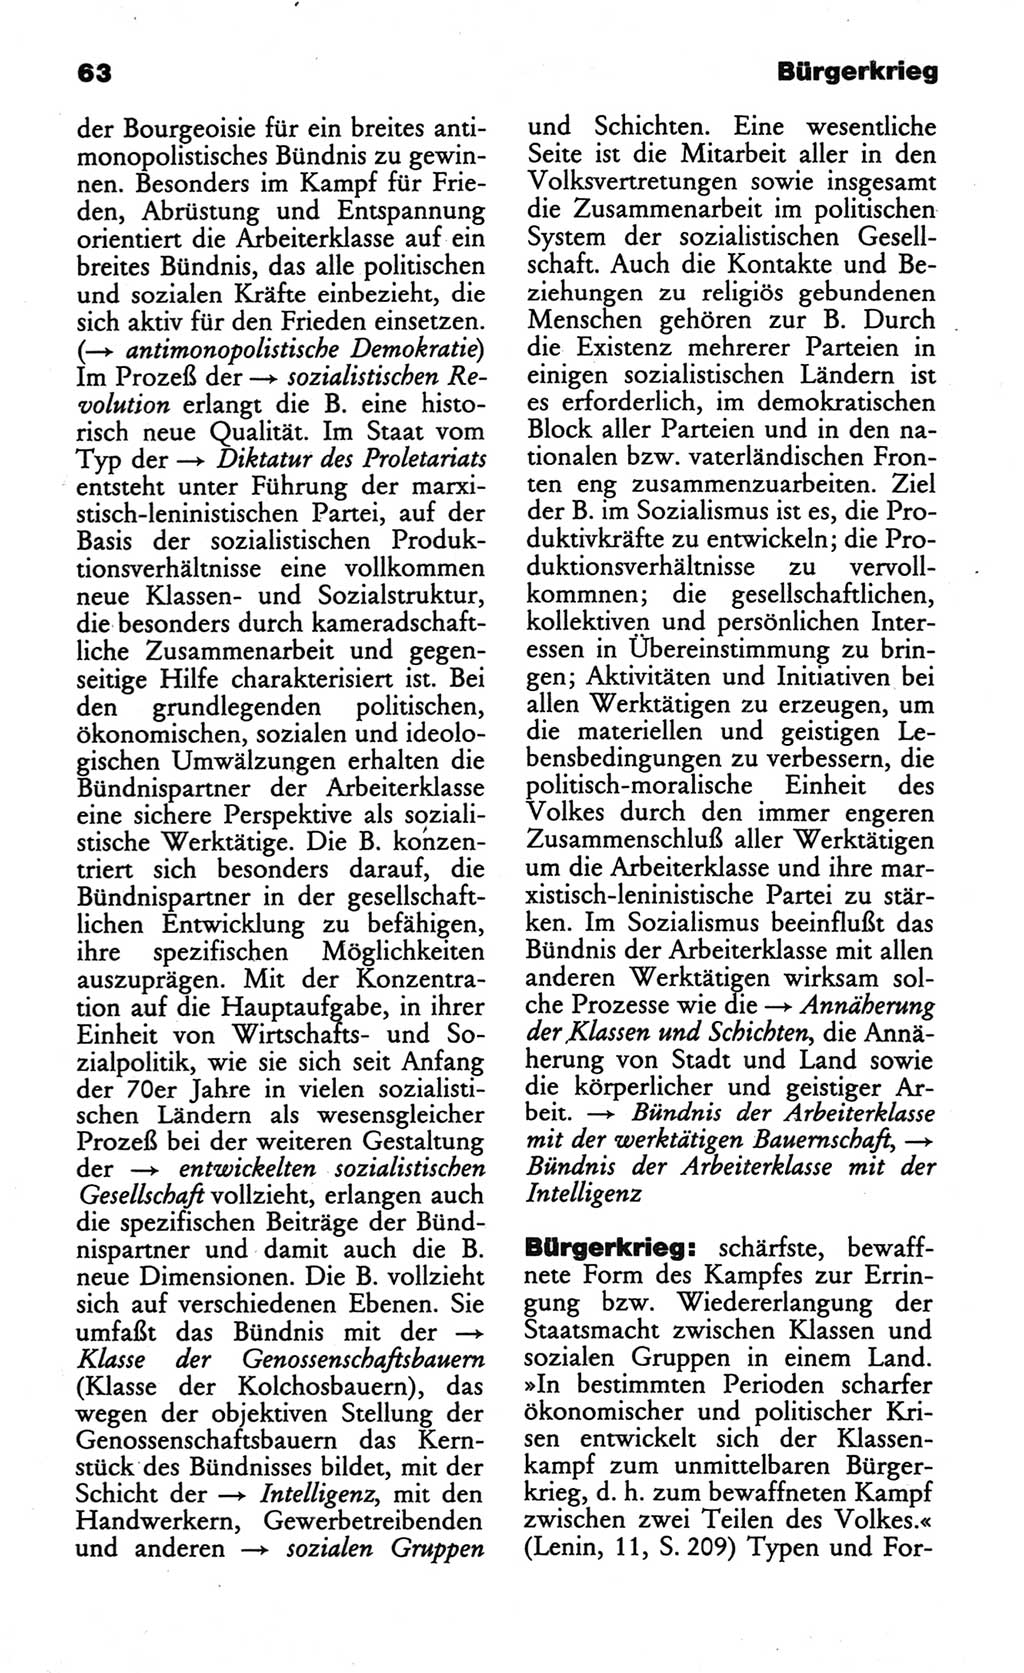 Wörterbuch des wissenschaftlichen Kommunismus [Deutsche Demokratische Republik (DDR)] 1984, Seite 63 (Wb. wiss. Komm. DDR 1984, S. 63)